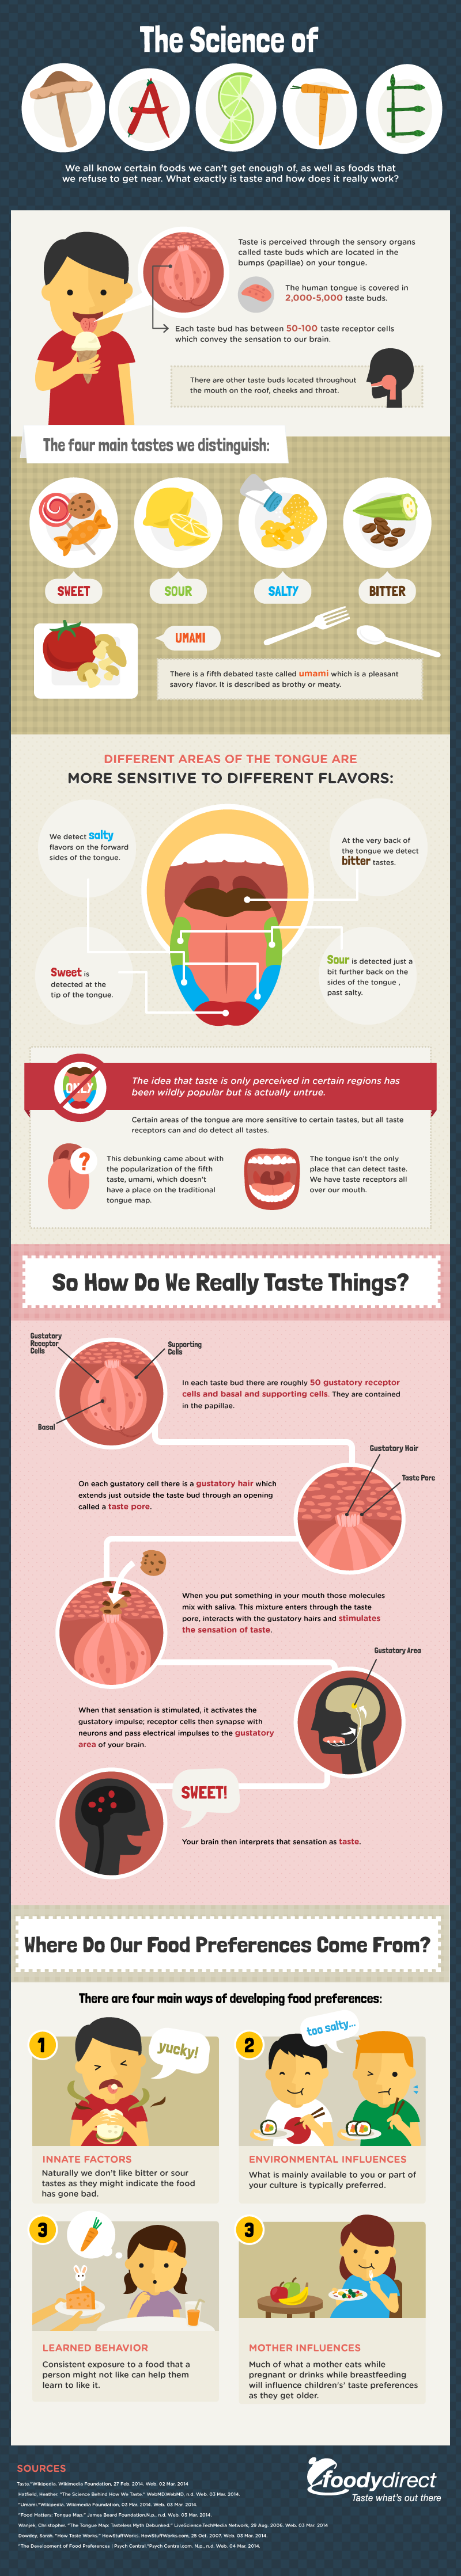 The Science of Taste